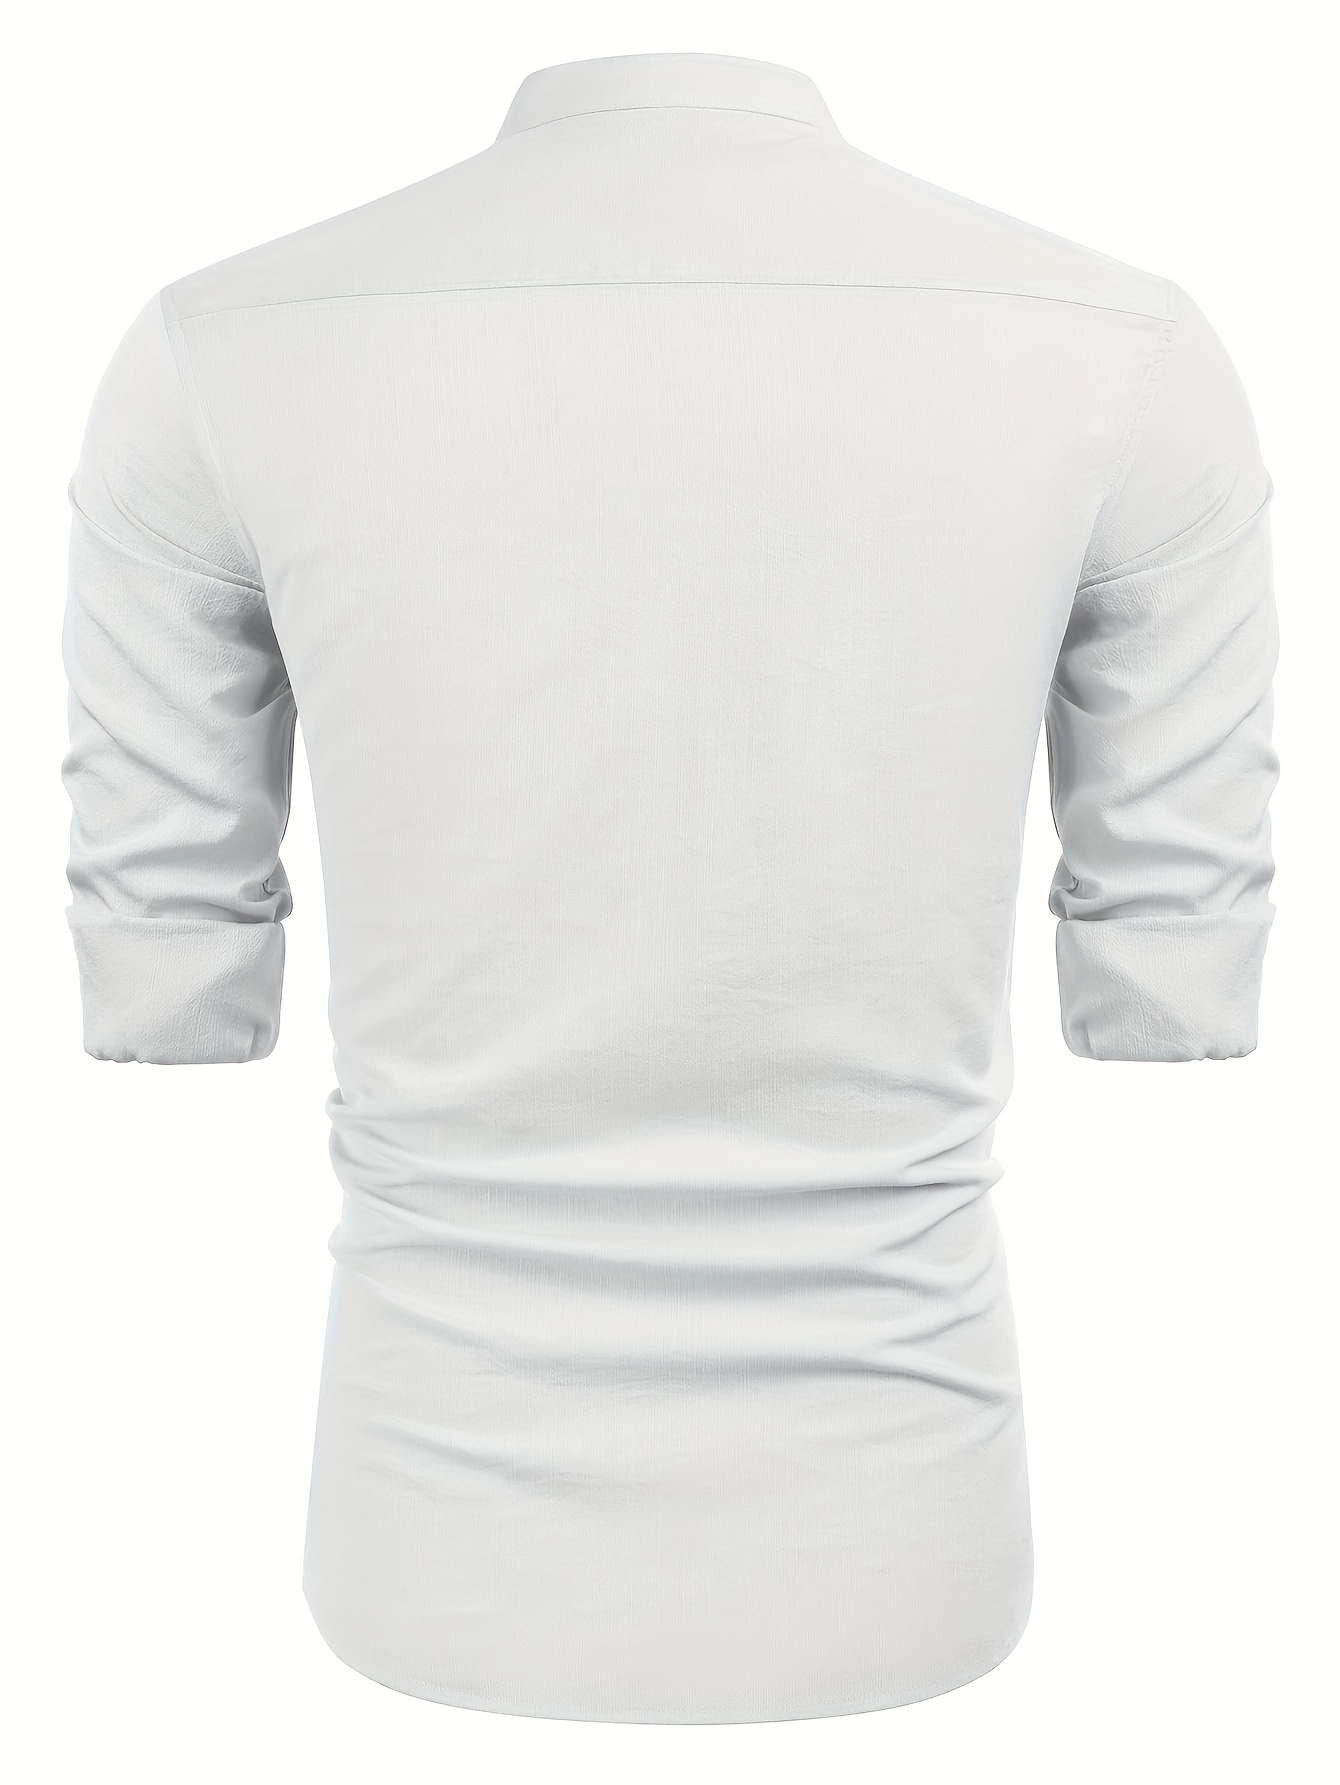 Long Sleeve Men's White Shirt, Mens Summer Shirt, White Cotton Shirt, White Beach Shirt, Medieval Shirt, Beach Shirt for Men